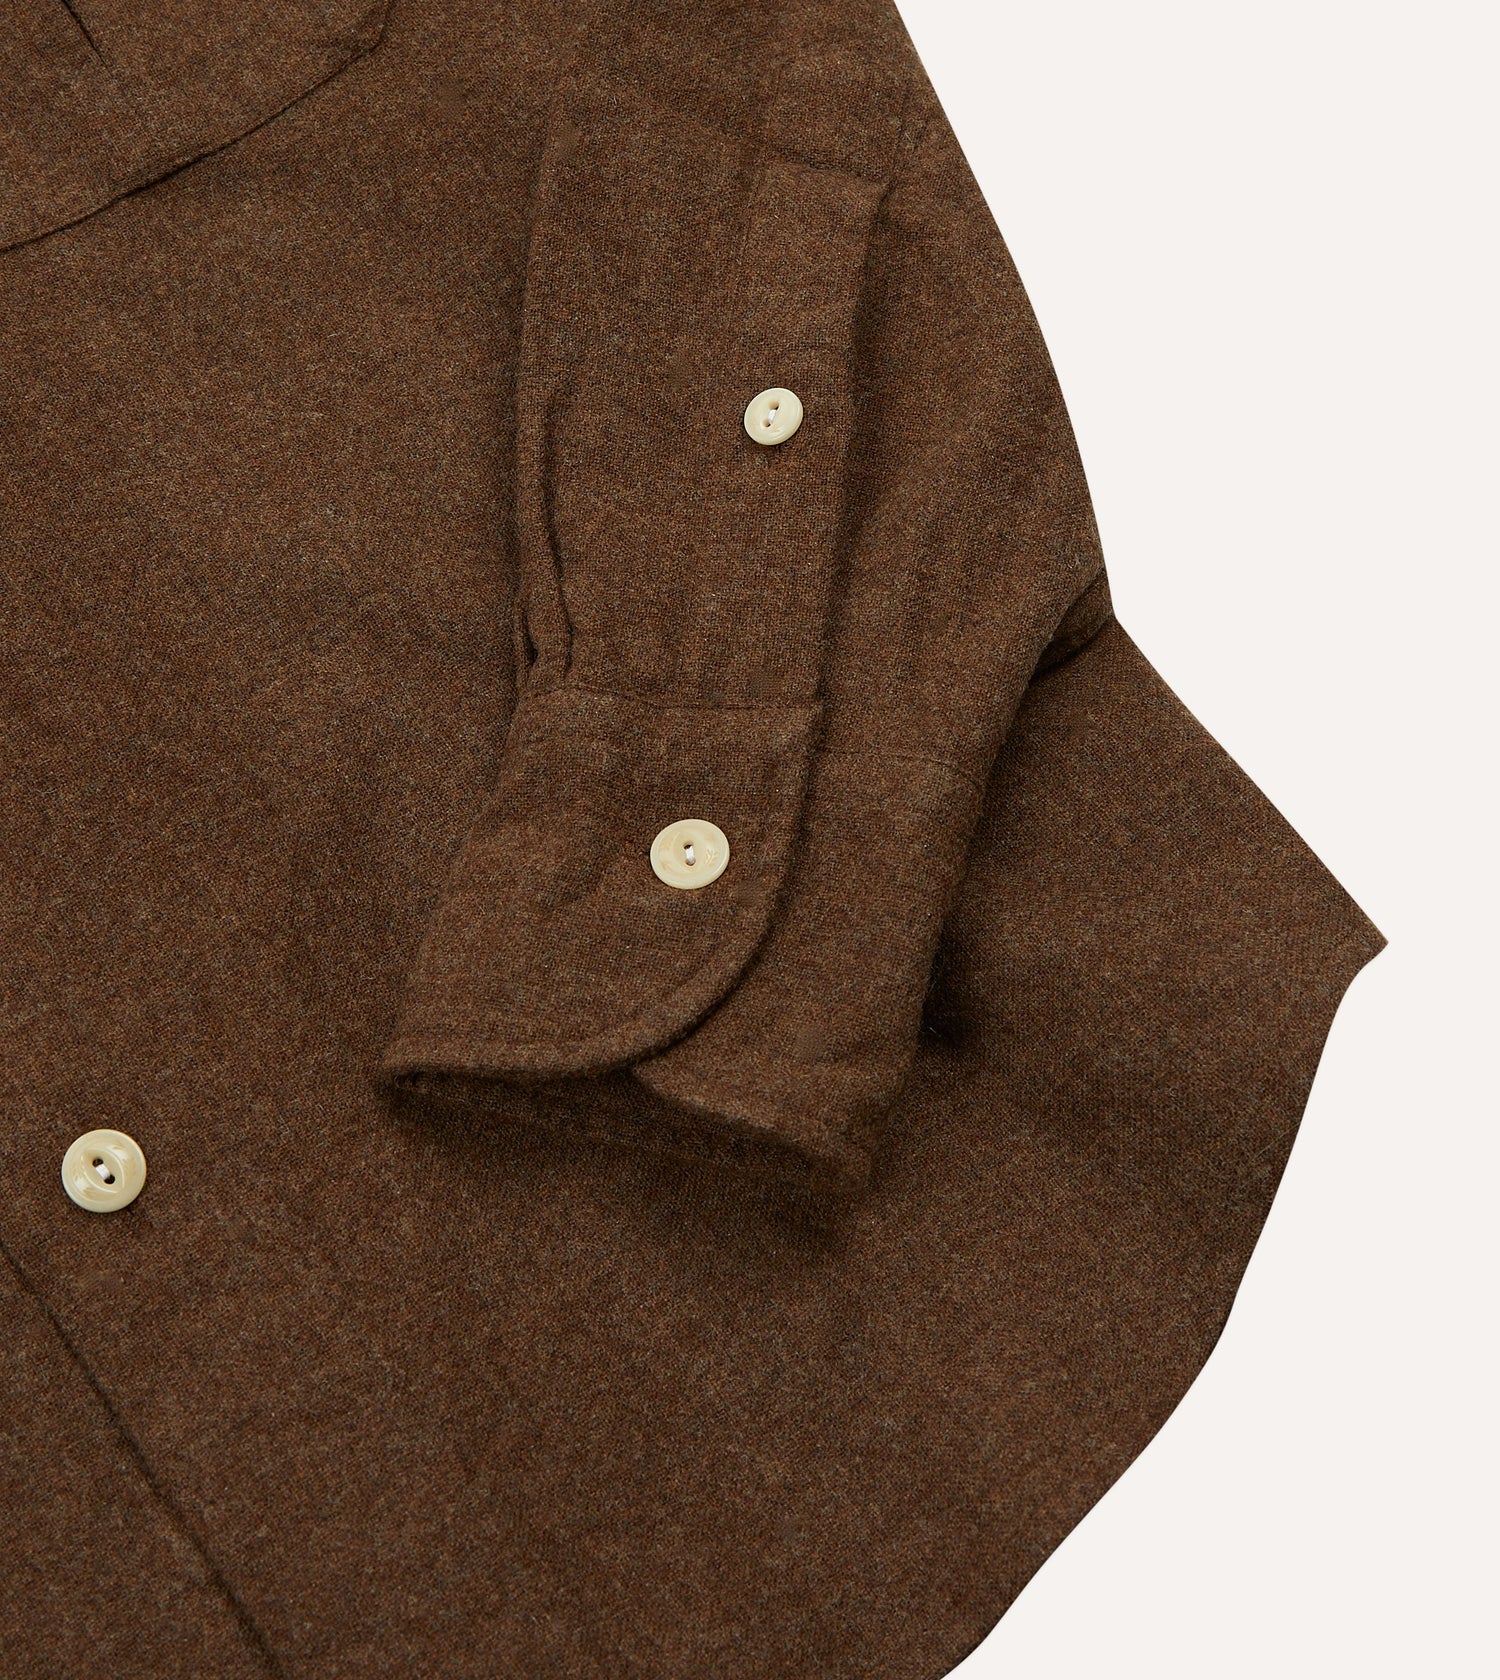 Brown Wool Two-Pocket Work Shirt